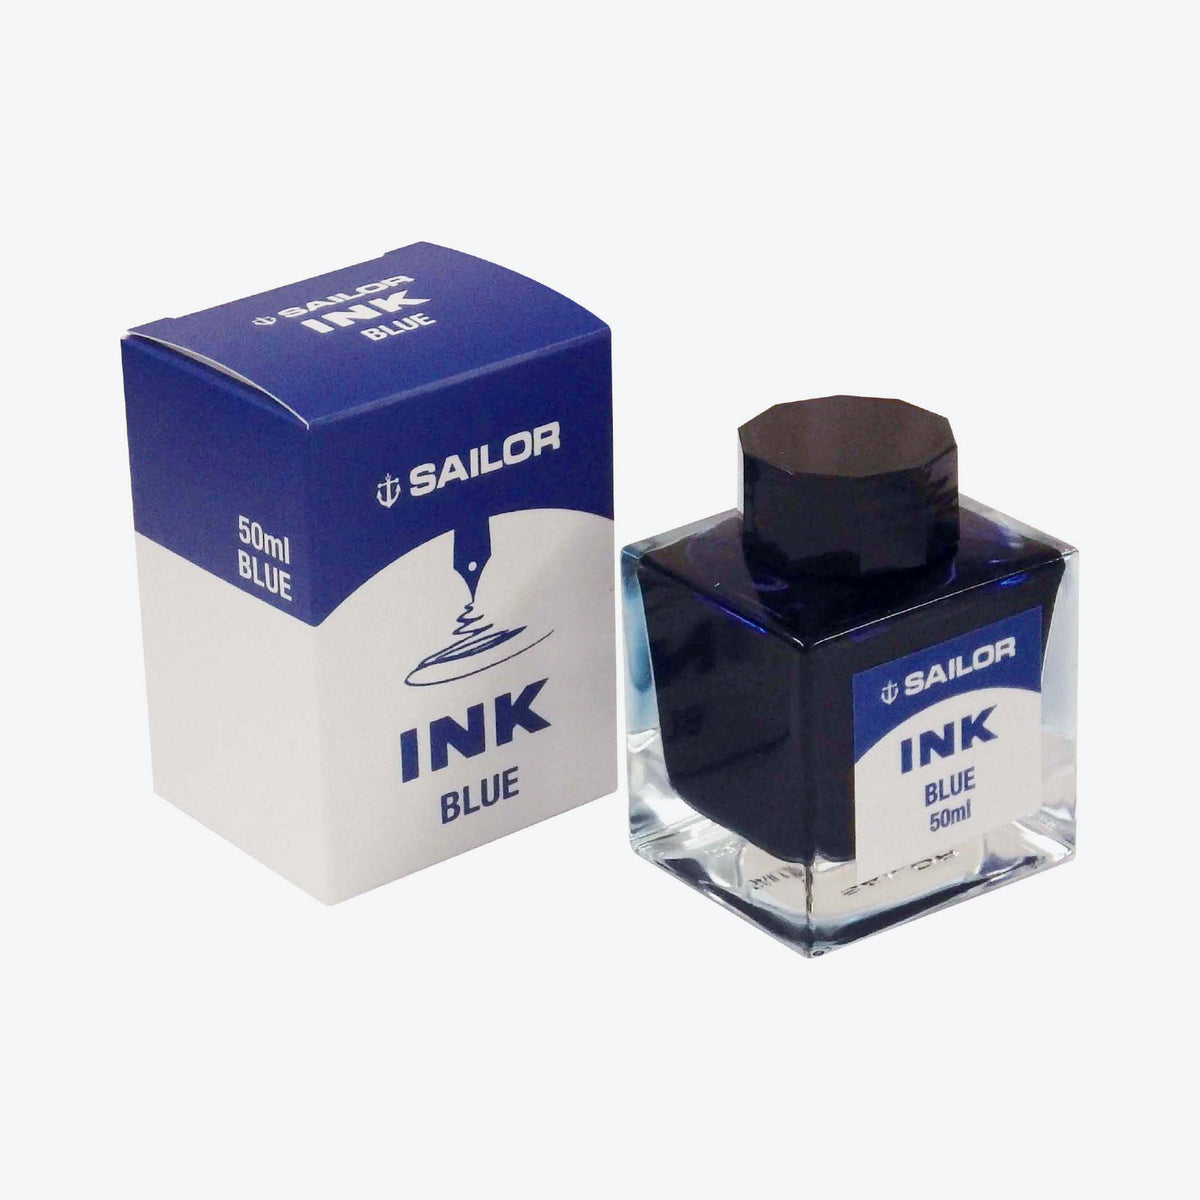 Sailor - Ink 50ml - Blue